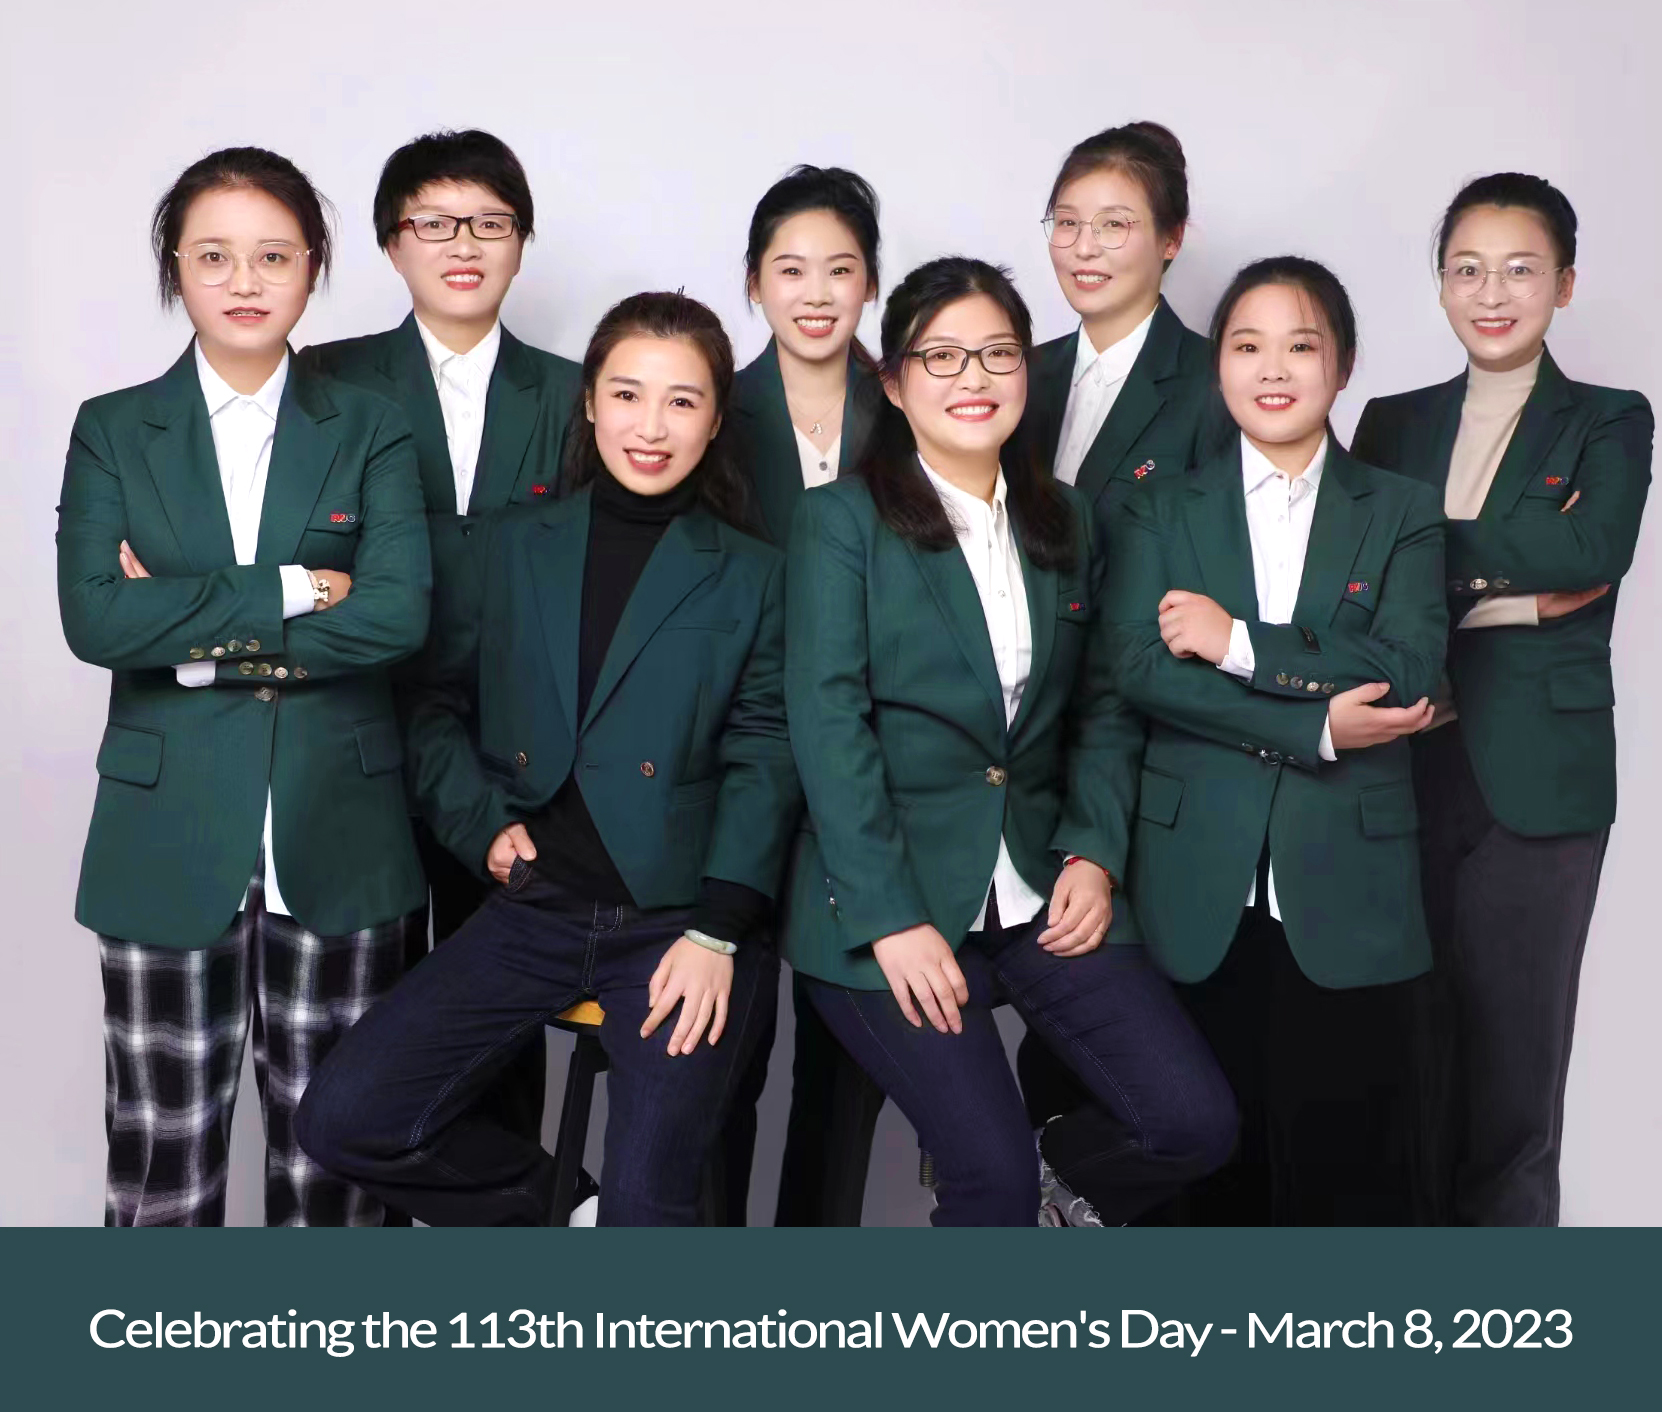 Wir feiern den 113. Internationalen Frauentag – 8. März 2023